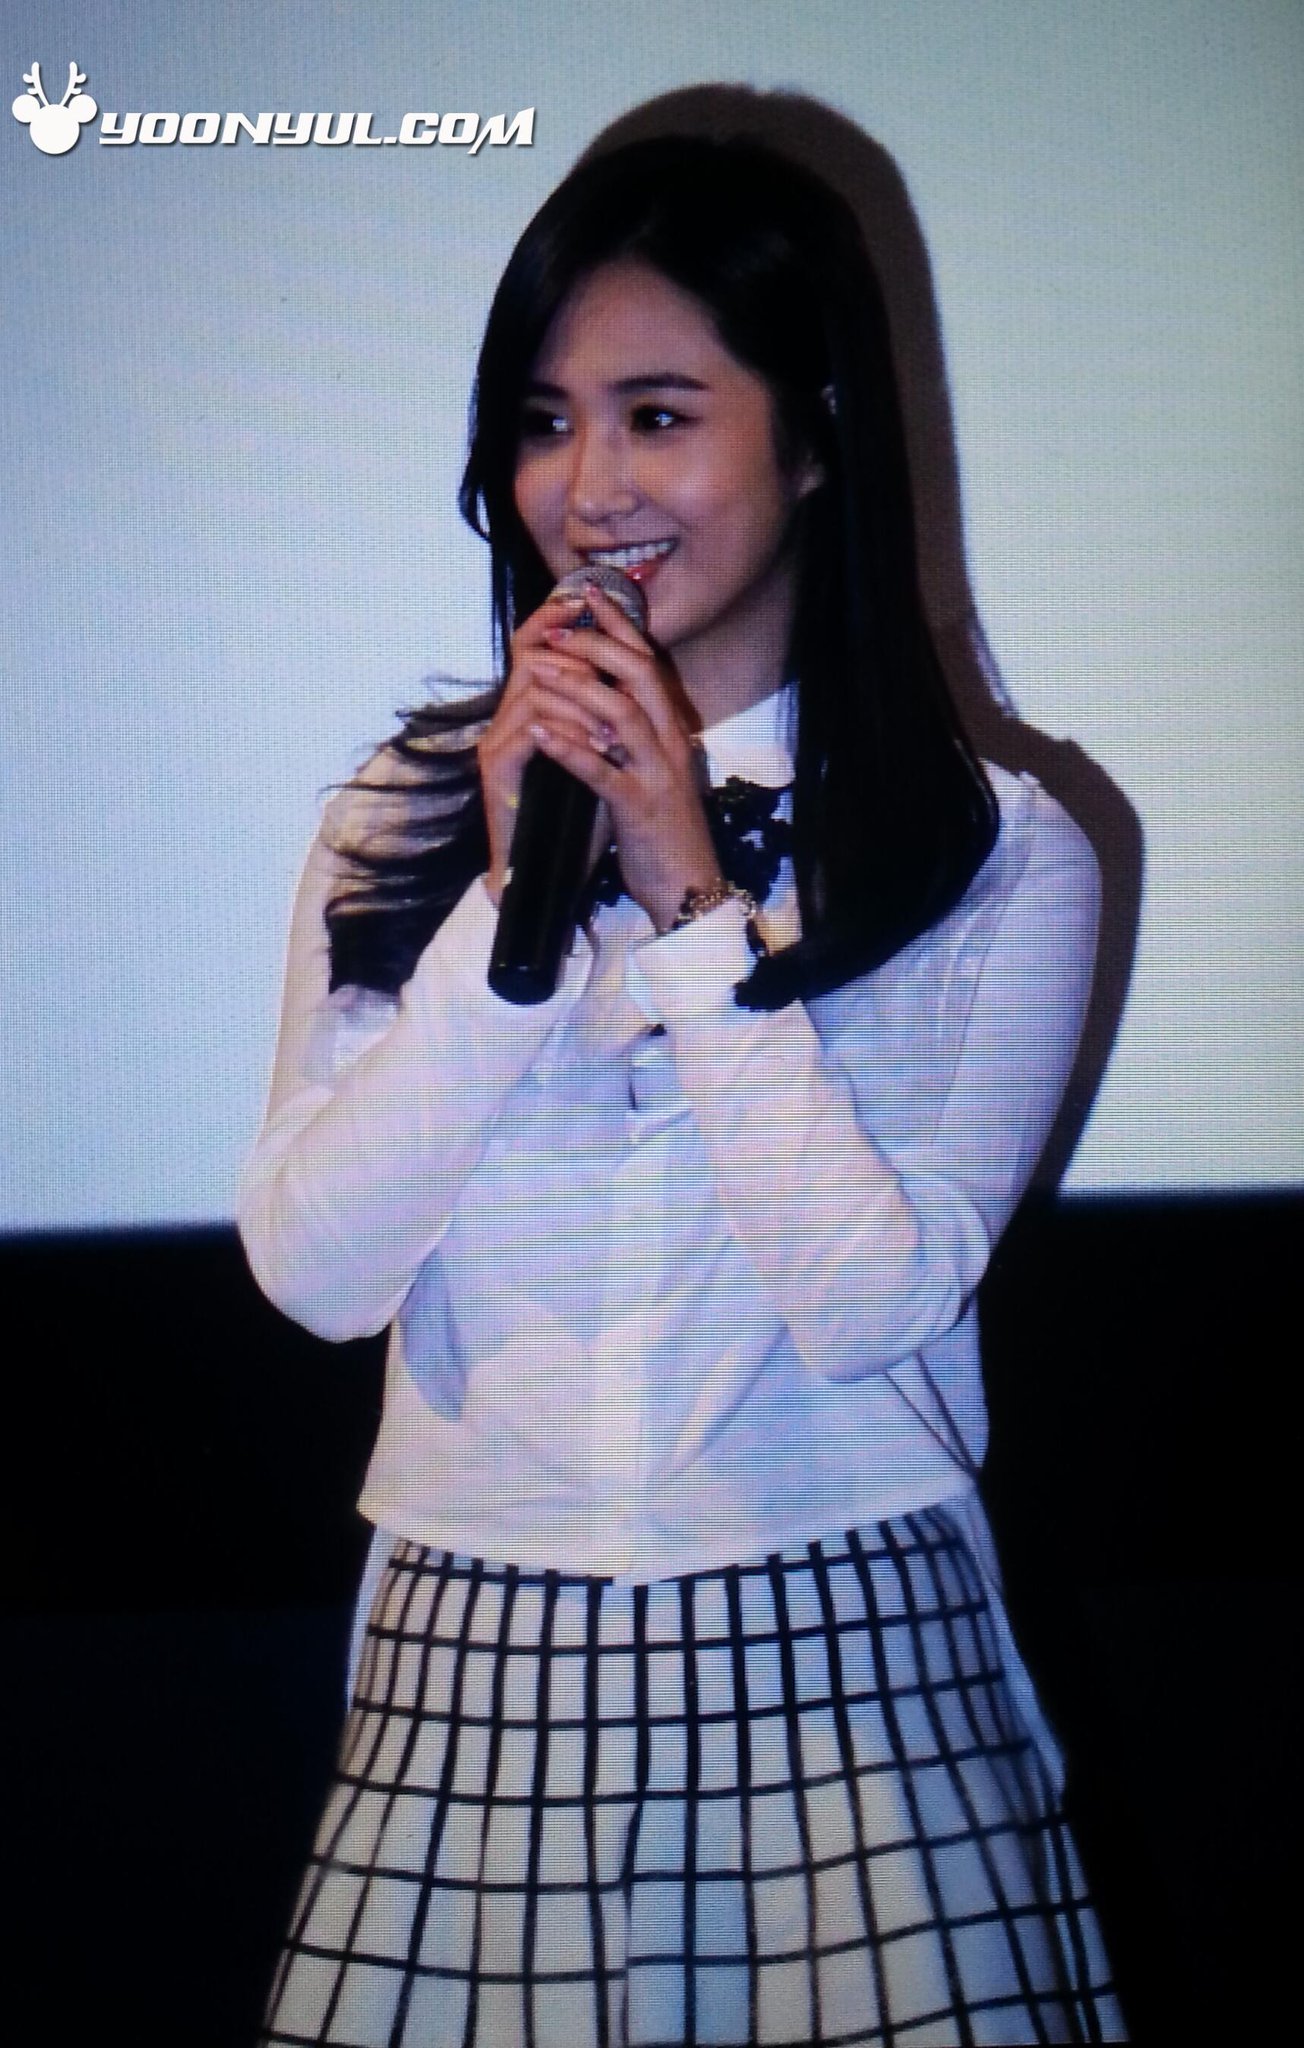 [PIC][07-11-2013]Yuri xuất hiện tại sự kiện "Lotte Cinema" Stage Greeting vào chiều nay + Selca của cô cùng các diễn viên khác BYeLamrCUAAlSOz